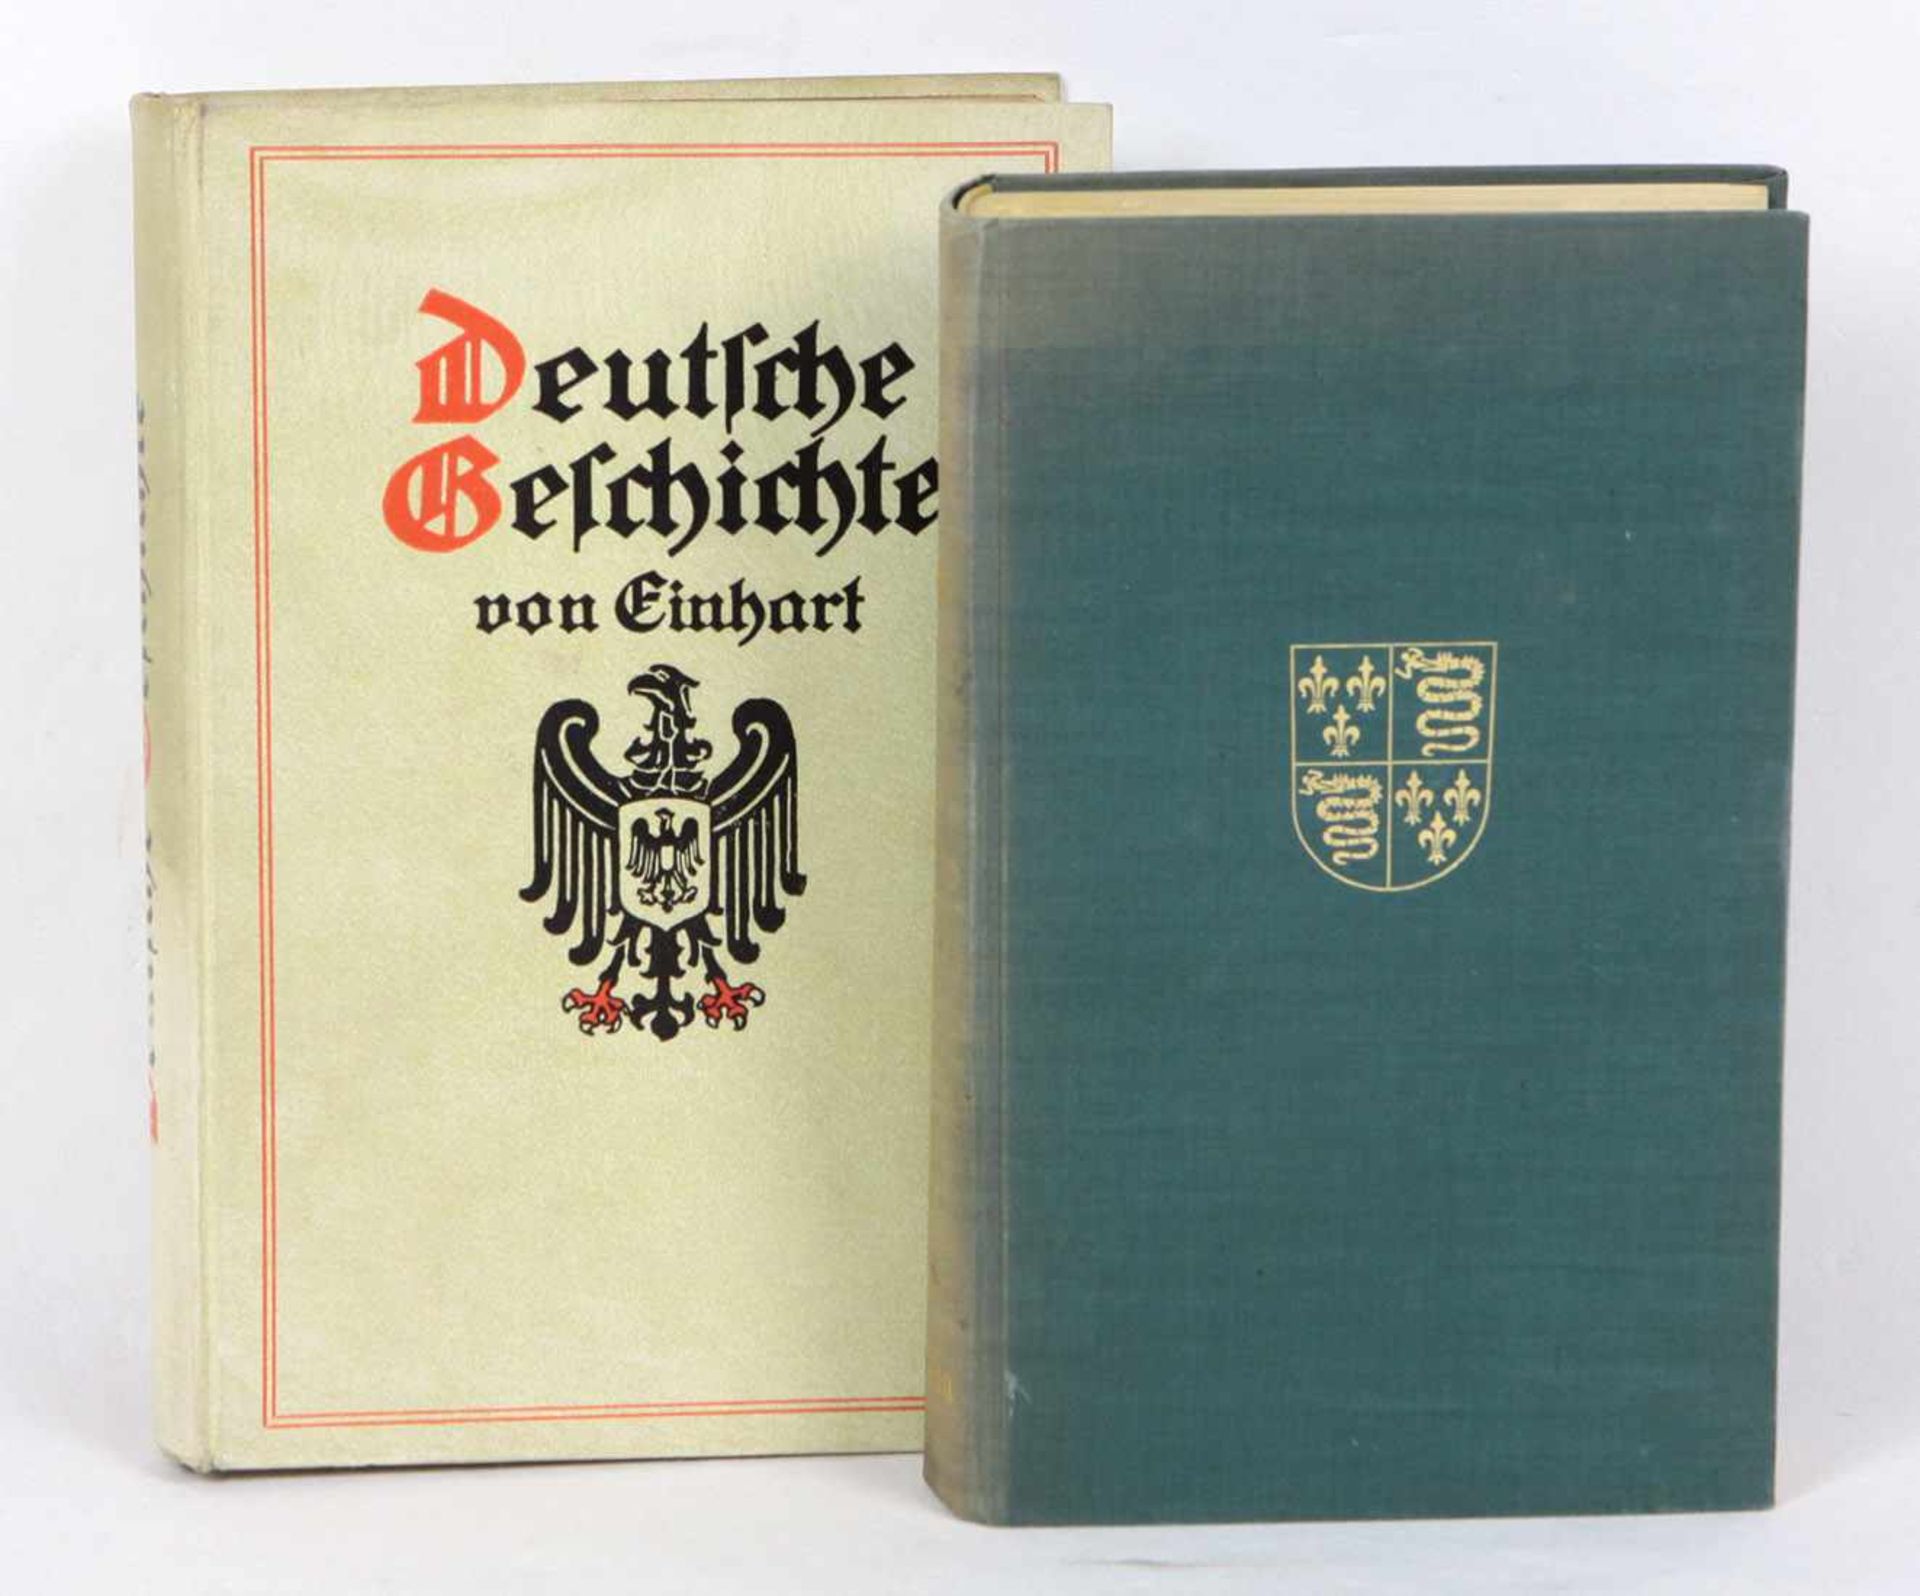 Deutsche Geschichte u.a. von Einhart, mit 16 Vollbildern und einer bunten Karte des deutschen